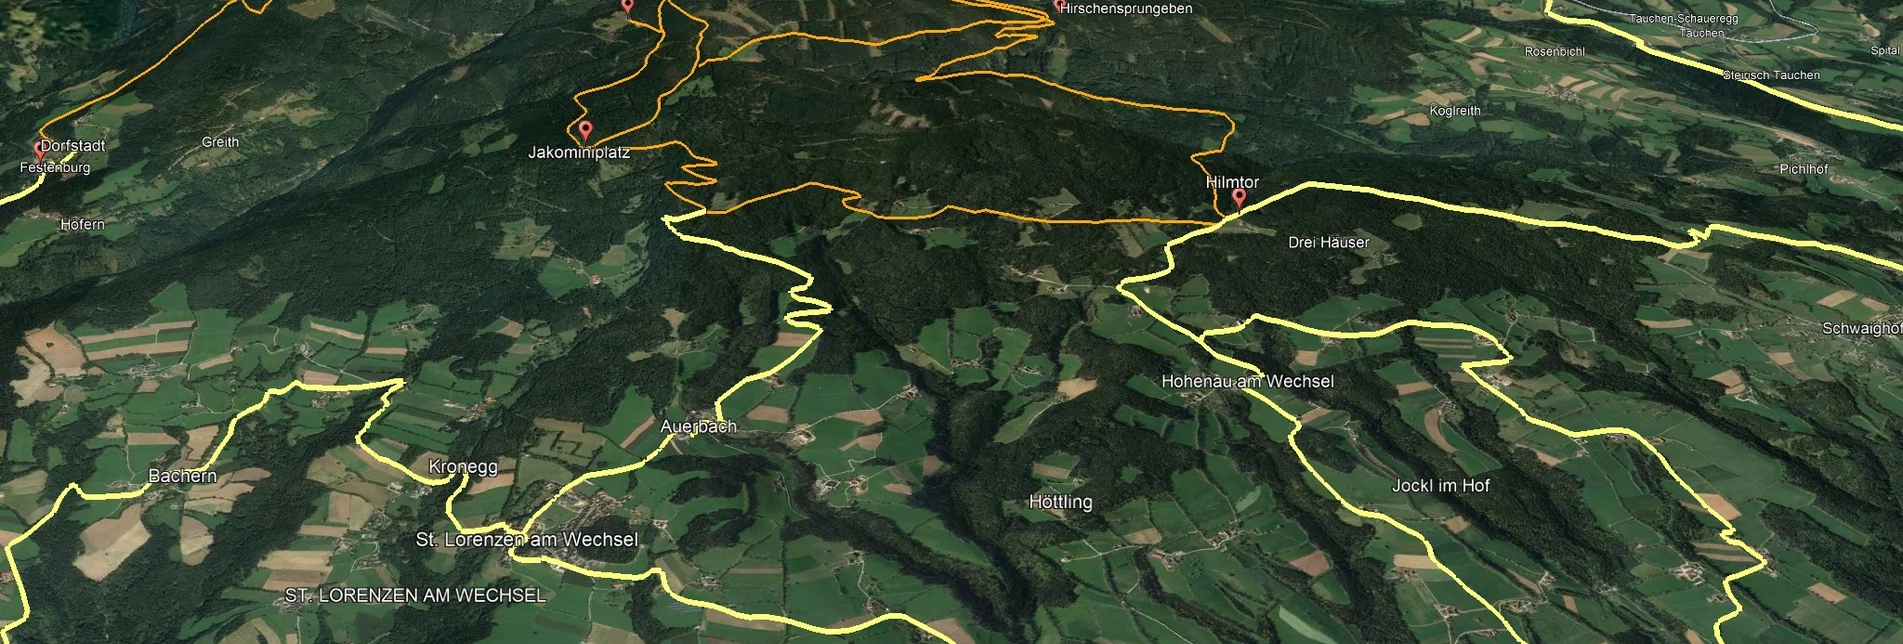 Mountain Biking PREVIEW Styrian Wexl Trails - Kogelweg Route - Touren-Impression #1 | © Verein Tourismusentwicklung Steirischer Wechsel